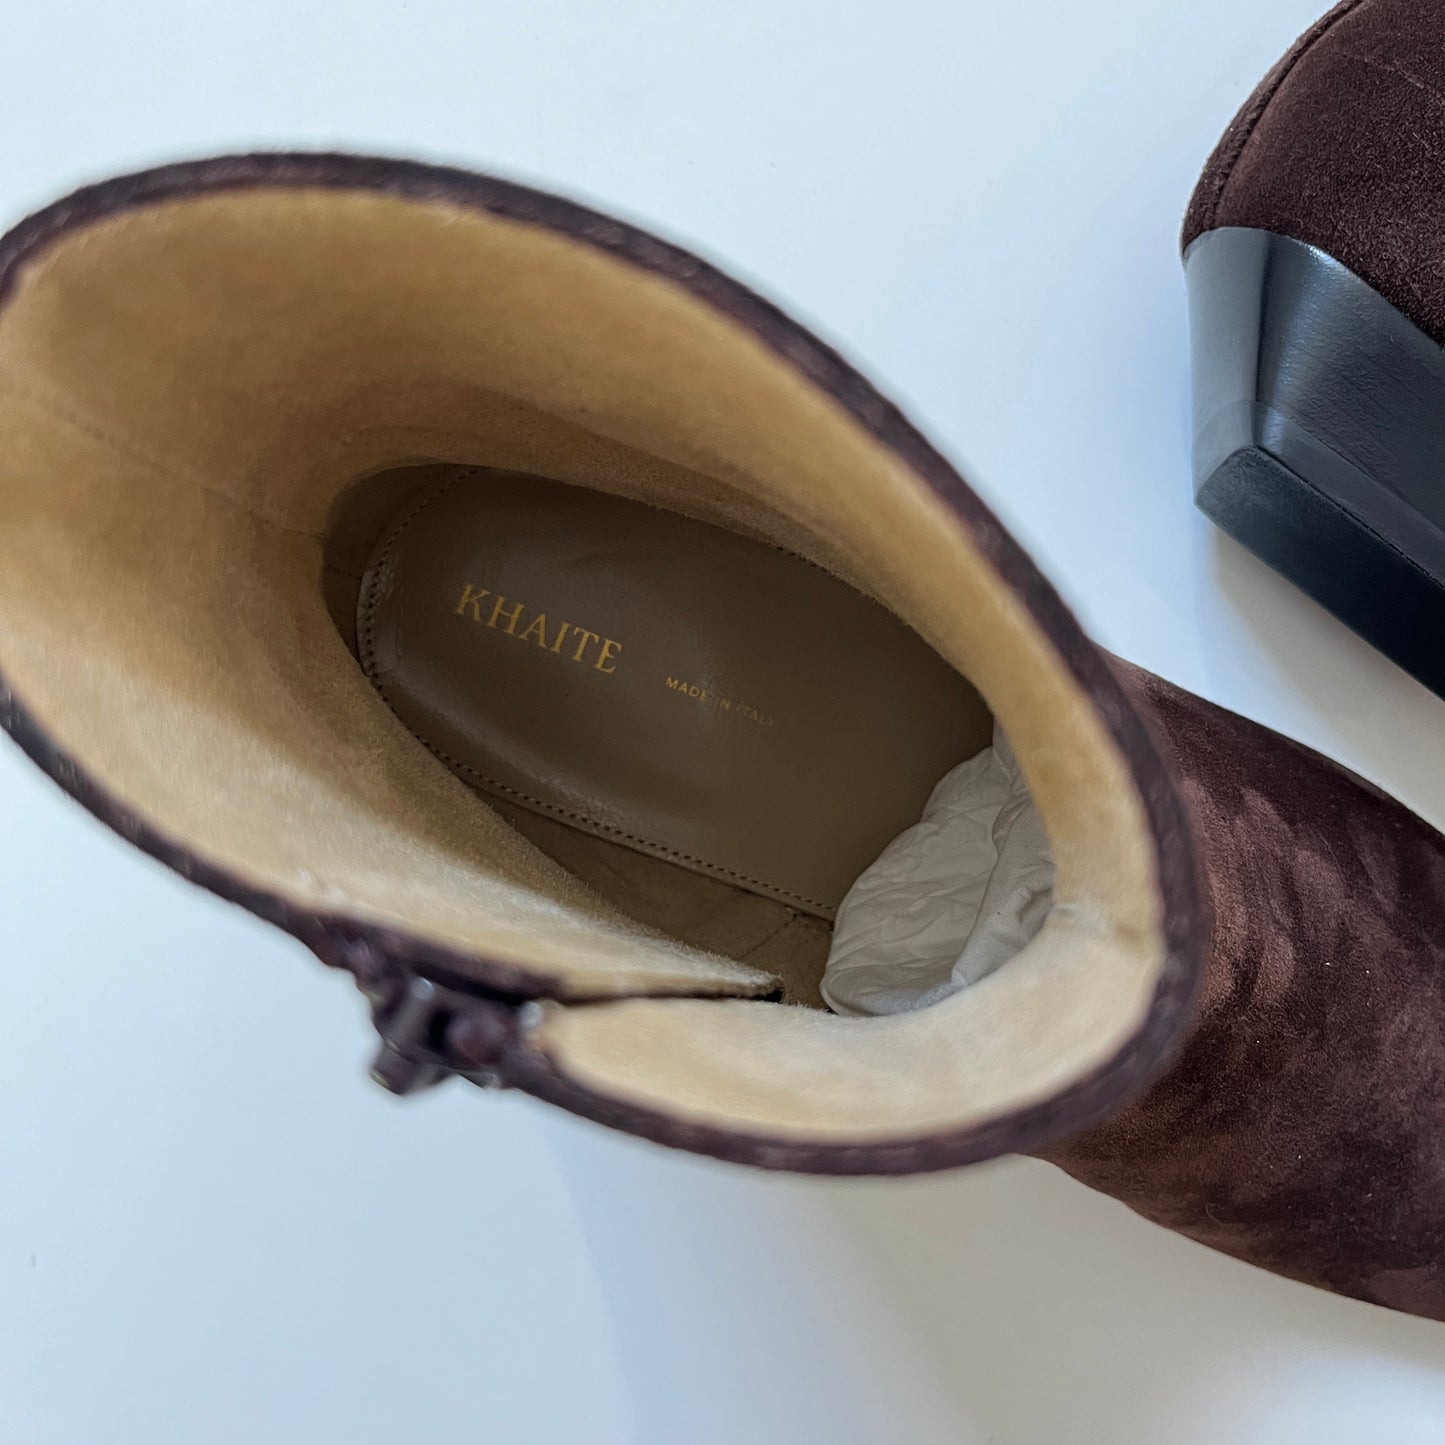 KHAITE Marfa Classic Flat Ankle Boot in Coffee